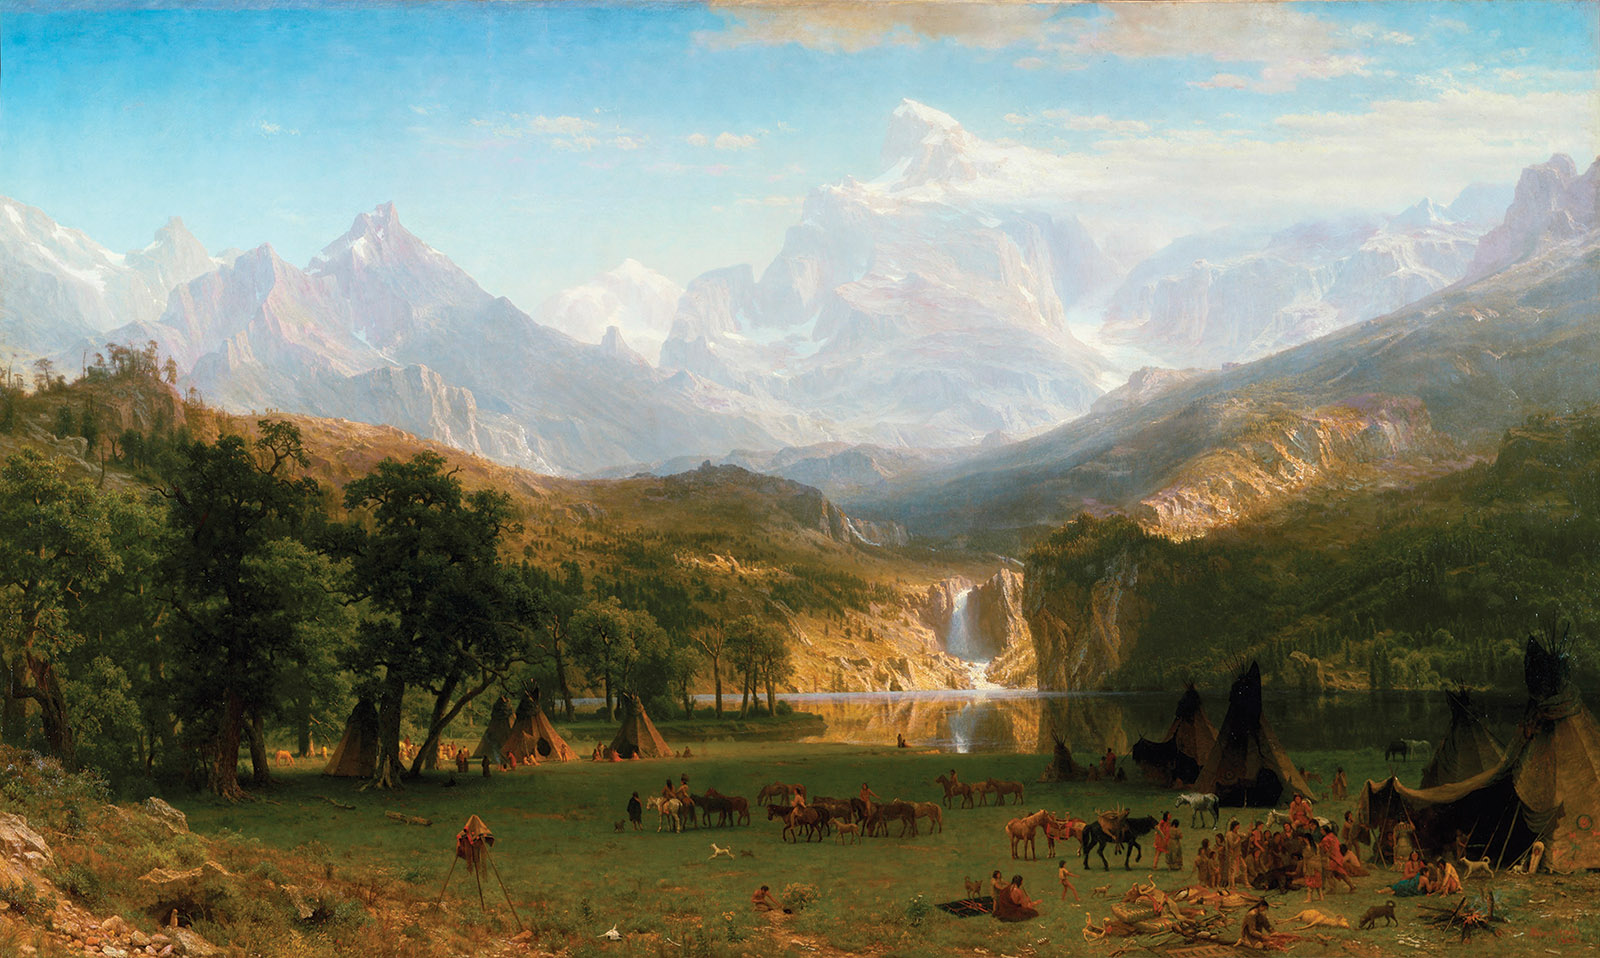 Albert Bierstadt: The Rocky Mountains, Lander’s Peak, 1863